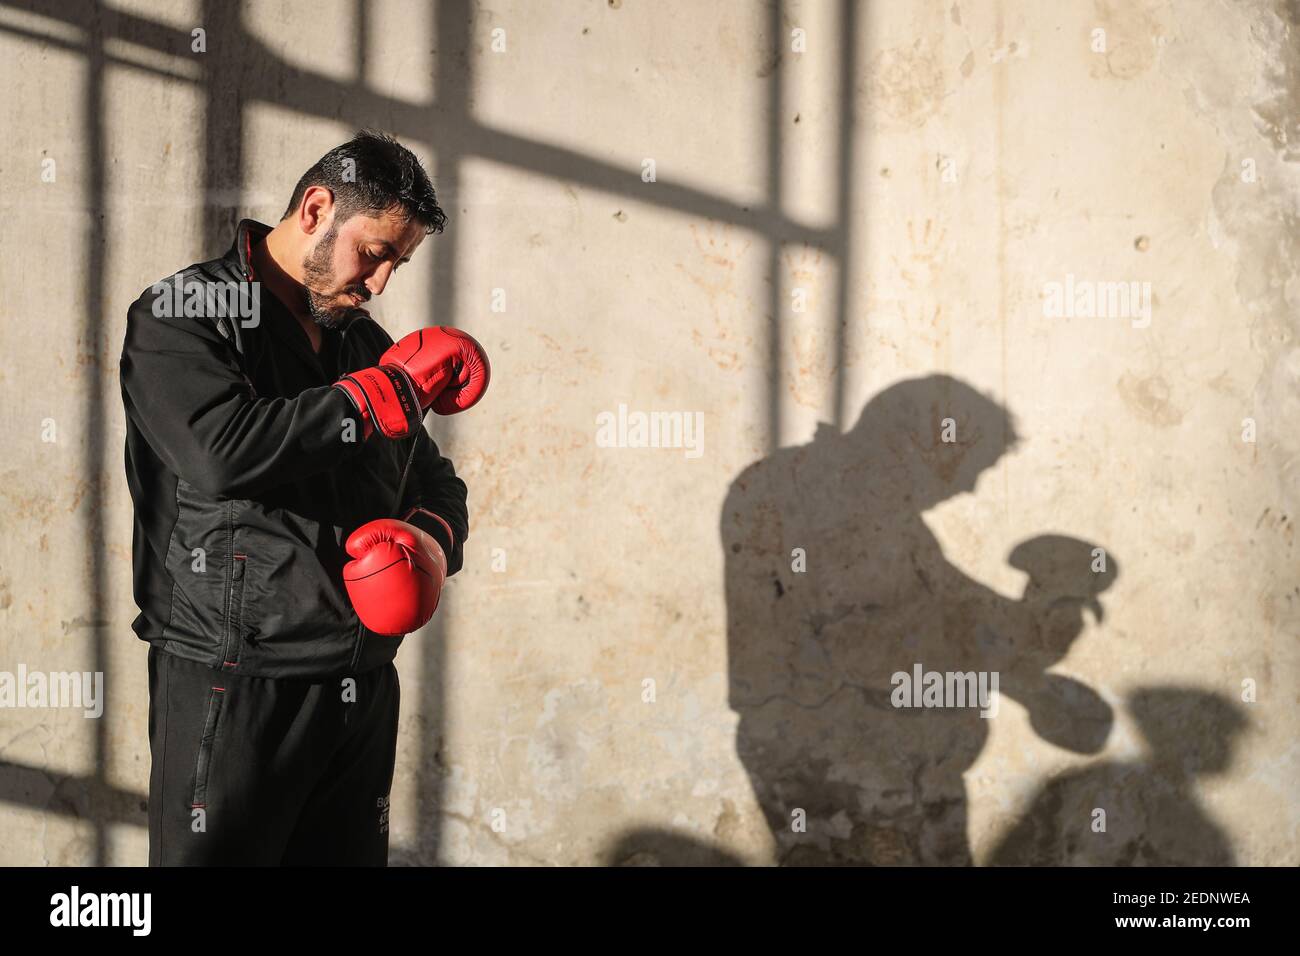 Atareb, Syrie. 14 février 2021. Ahmad Dwara se porte bien avant une séance de formation. Cet homme de 25 ans, qui a été déplacé à l'intérieur du pays, a connu un début de carrière prometteur en tant que boxeur, en remportant les championnats syriens en 2009 et en compétition internationale aux championnats du monde de boxe en 2011. Le début de la guerre civile syrienne il y a dix ans a empêché une carrière professionnelle. Aujourd'hui, le chauffeur d'ambulance pratique dans un entrepôt partiellement détruit souvent attirer des enfants de l'entraînement de quartier avec lui. Credit: Aras Alkharboutli/dpa/Alamy Live News Banque D'Images